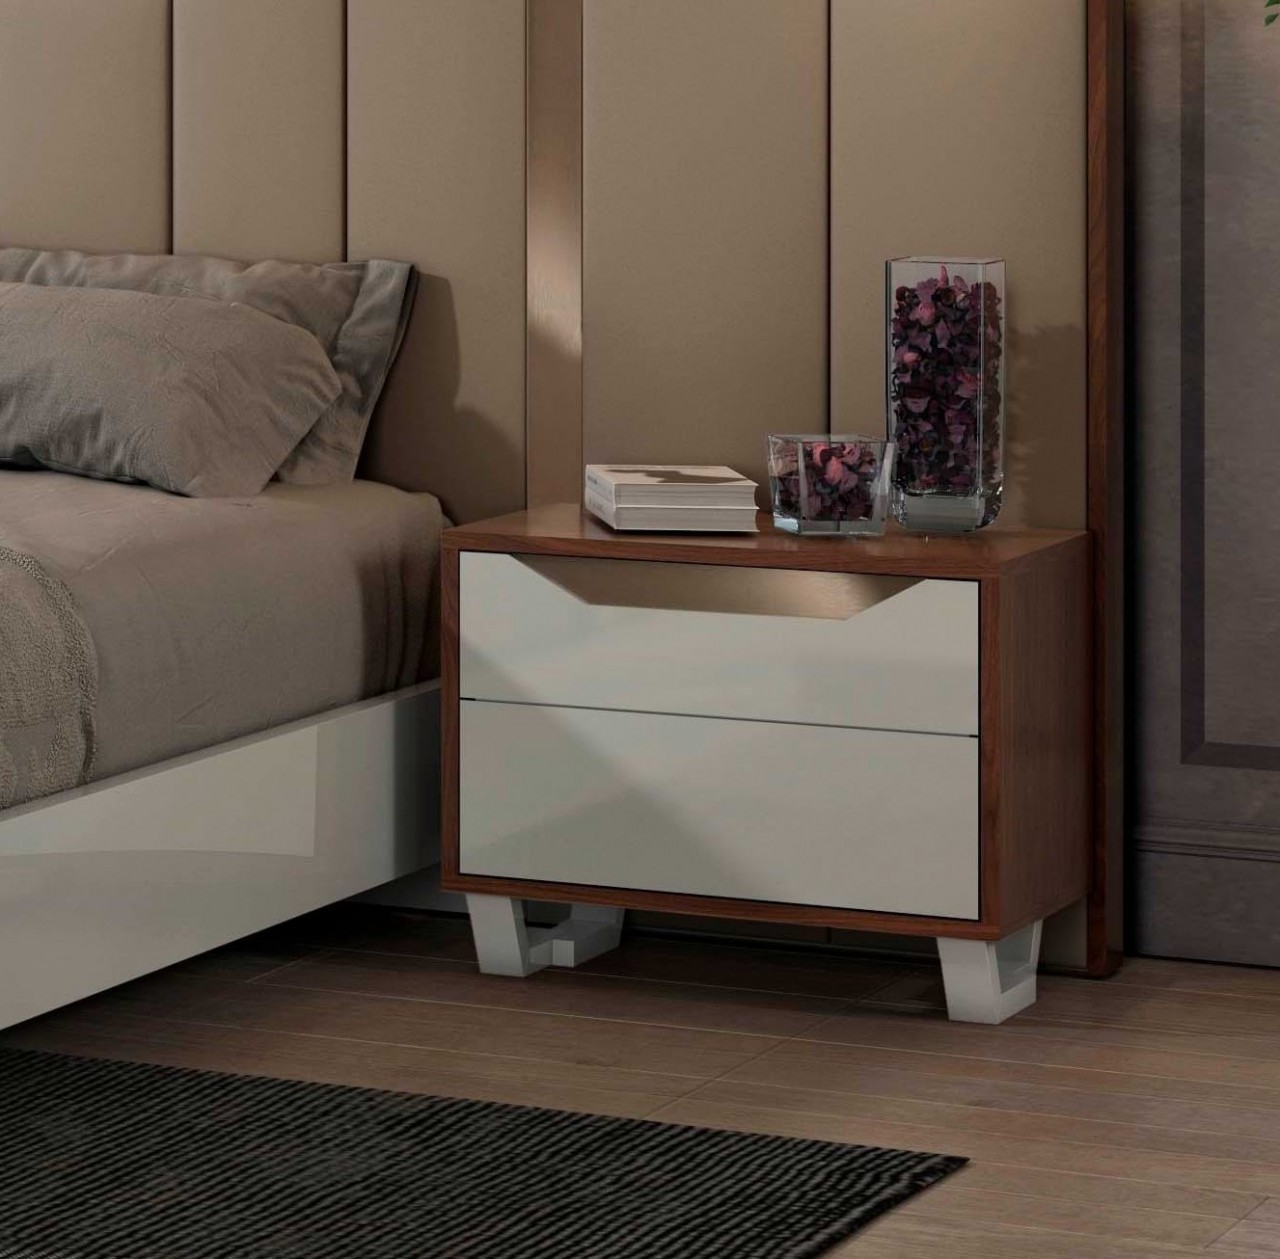 Dormir em estilo! A cama de casal Luca Simple é a combinação perfeita entre conforto e estilo.